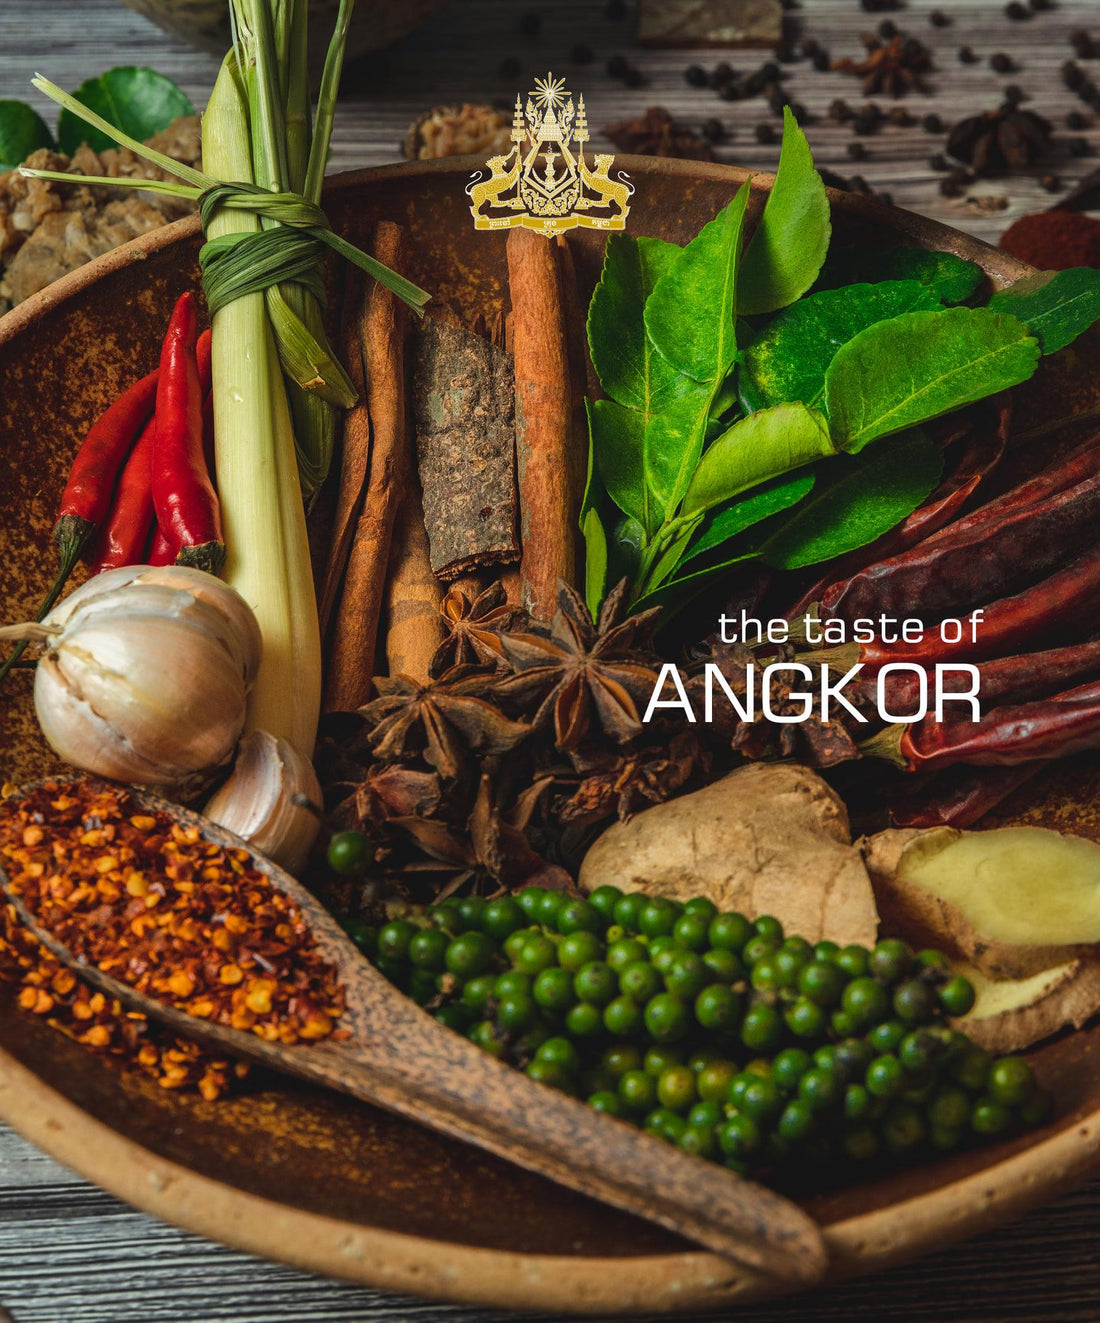 Cuisine cambodgienne : un livre de recettes doublement médaillé - The Taste of Angkor !